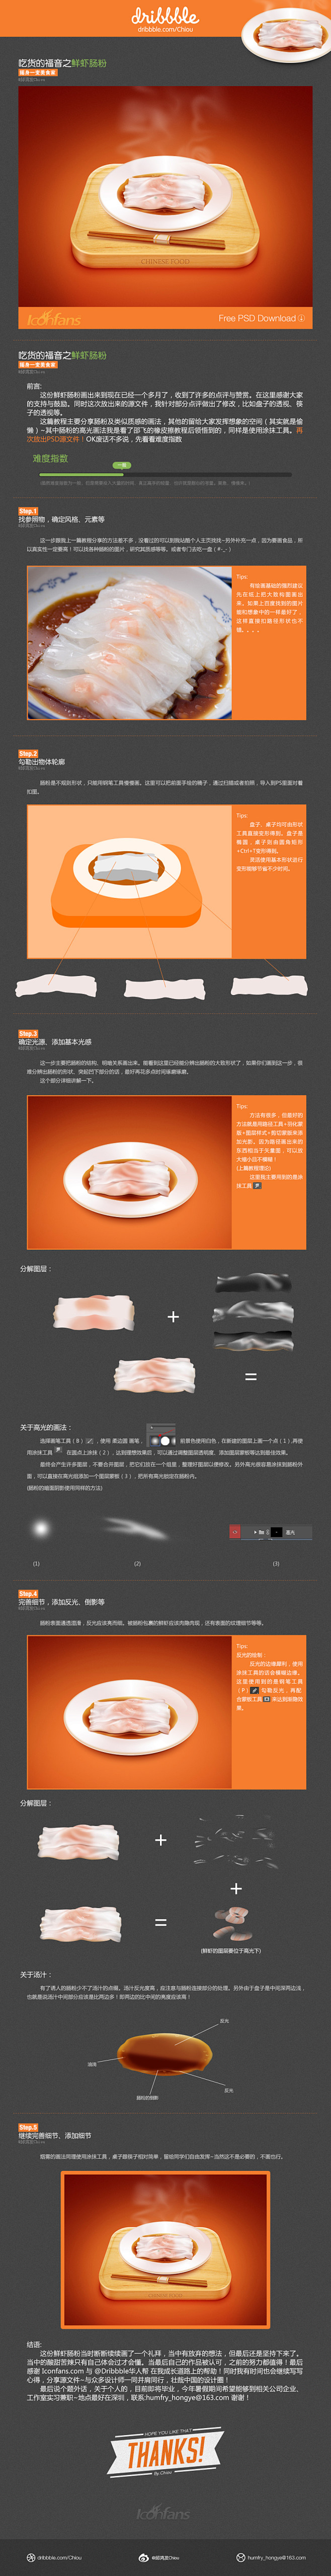 【鲜虾肠粉】设计?分享 - ICONFA...